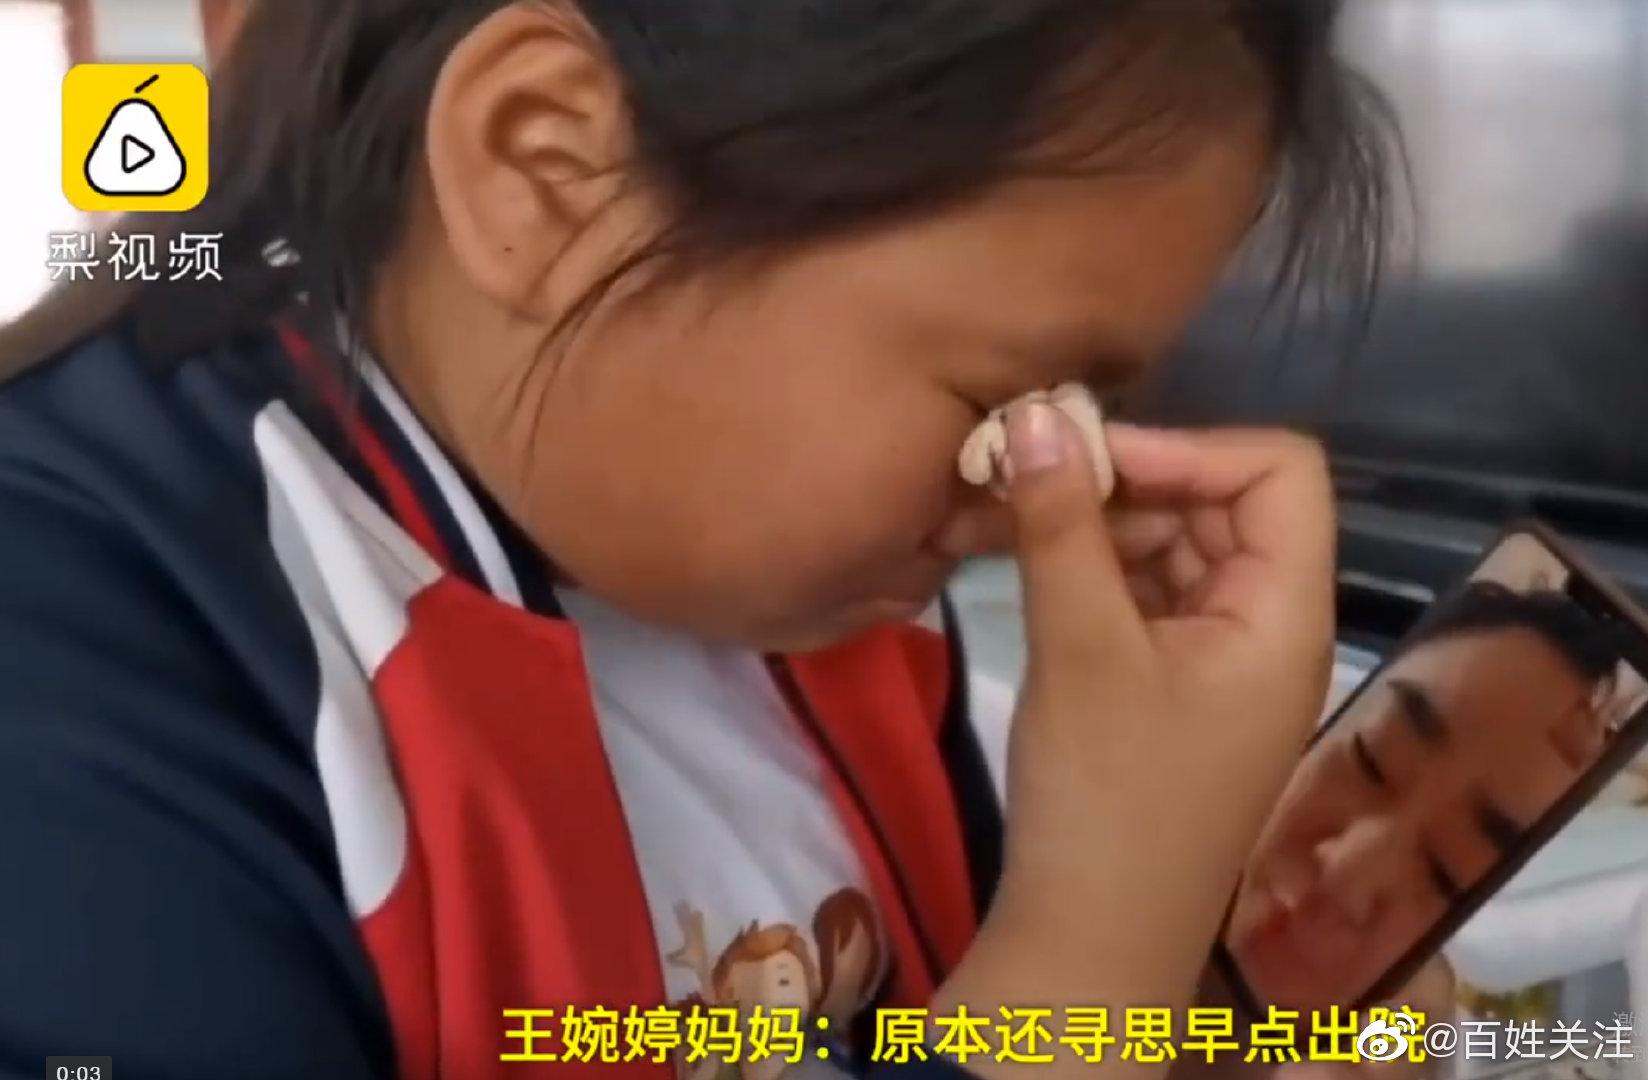 女孩每天吃4个馒头为妈妈移植骨髓 网友表示看哭了